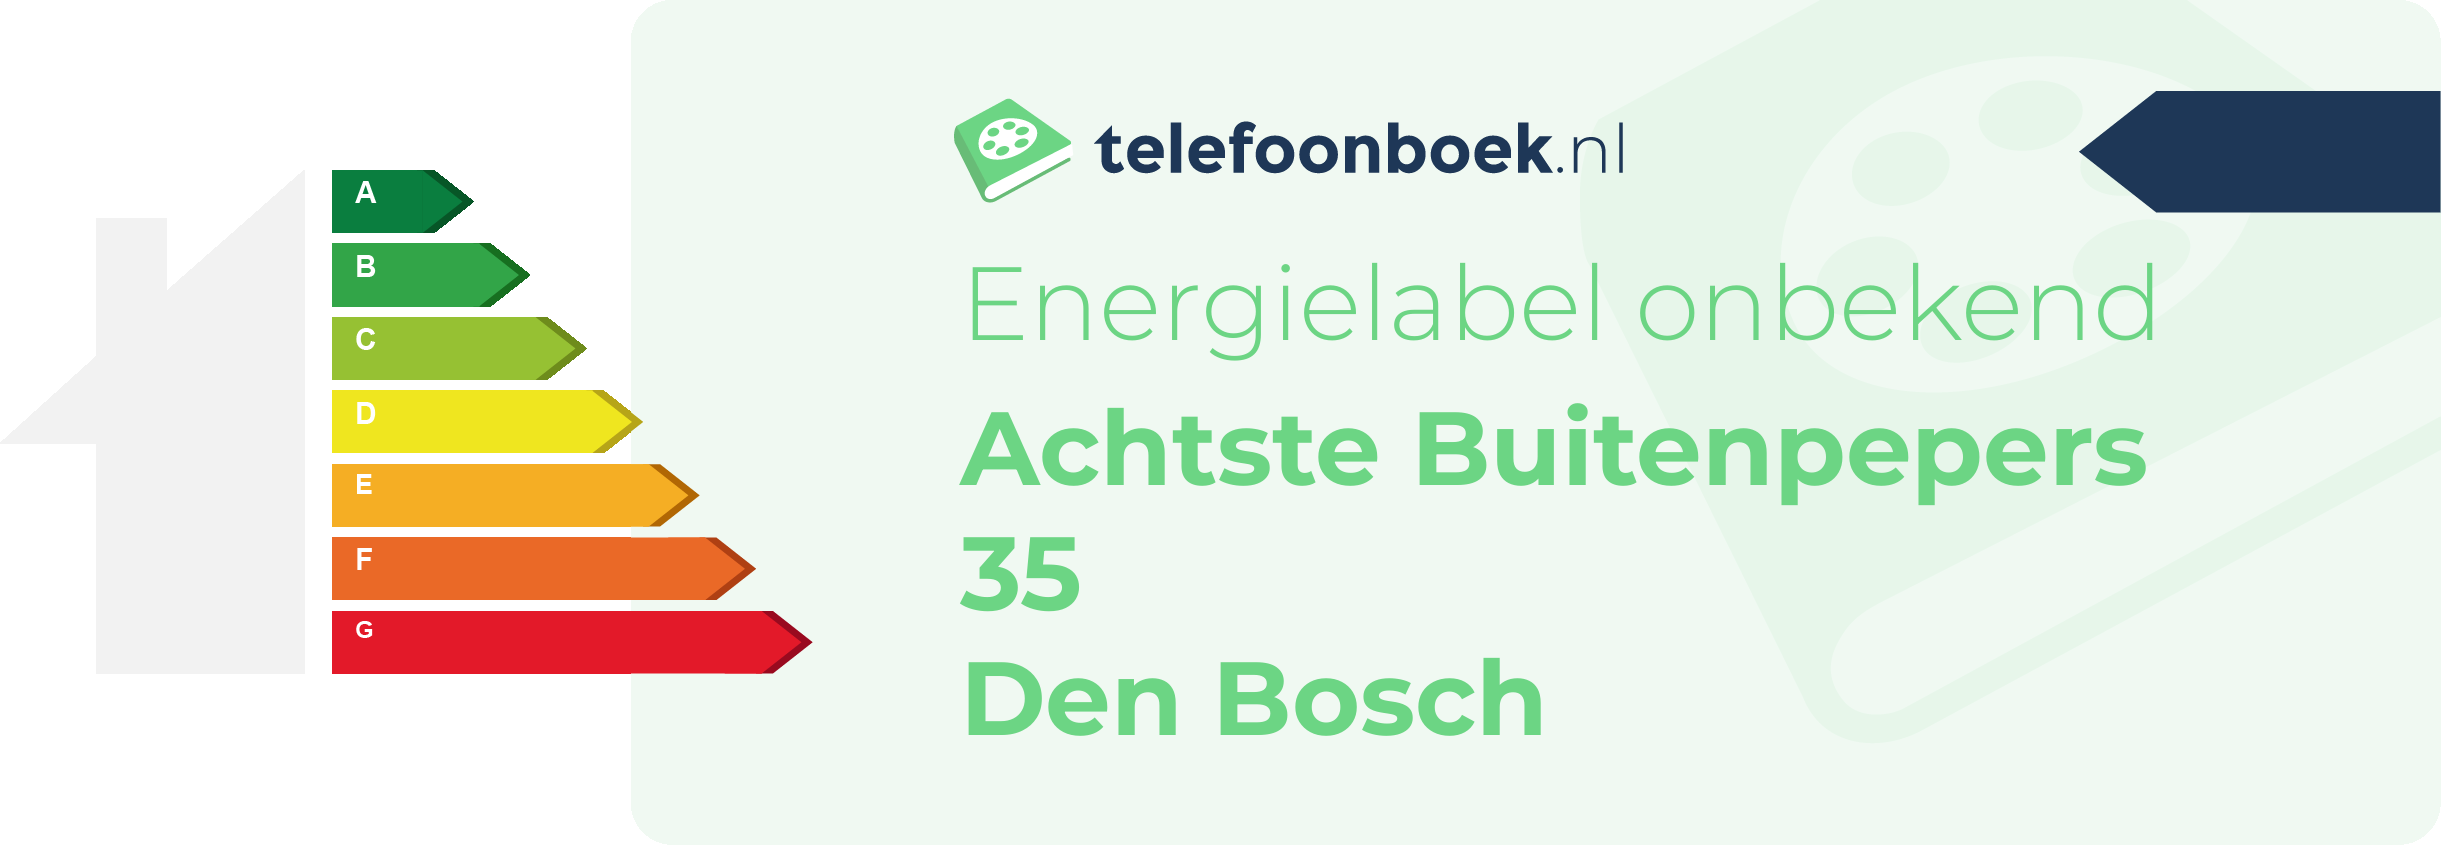 Energielabel Achtste Buitenpepers 35 Den Bosch